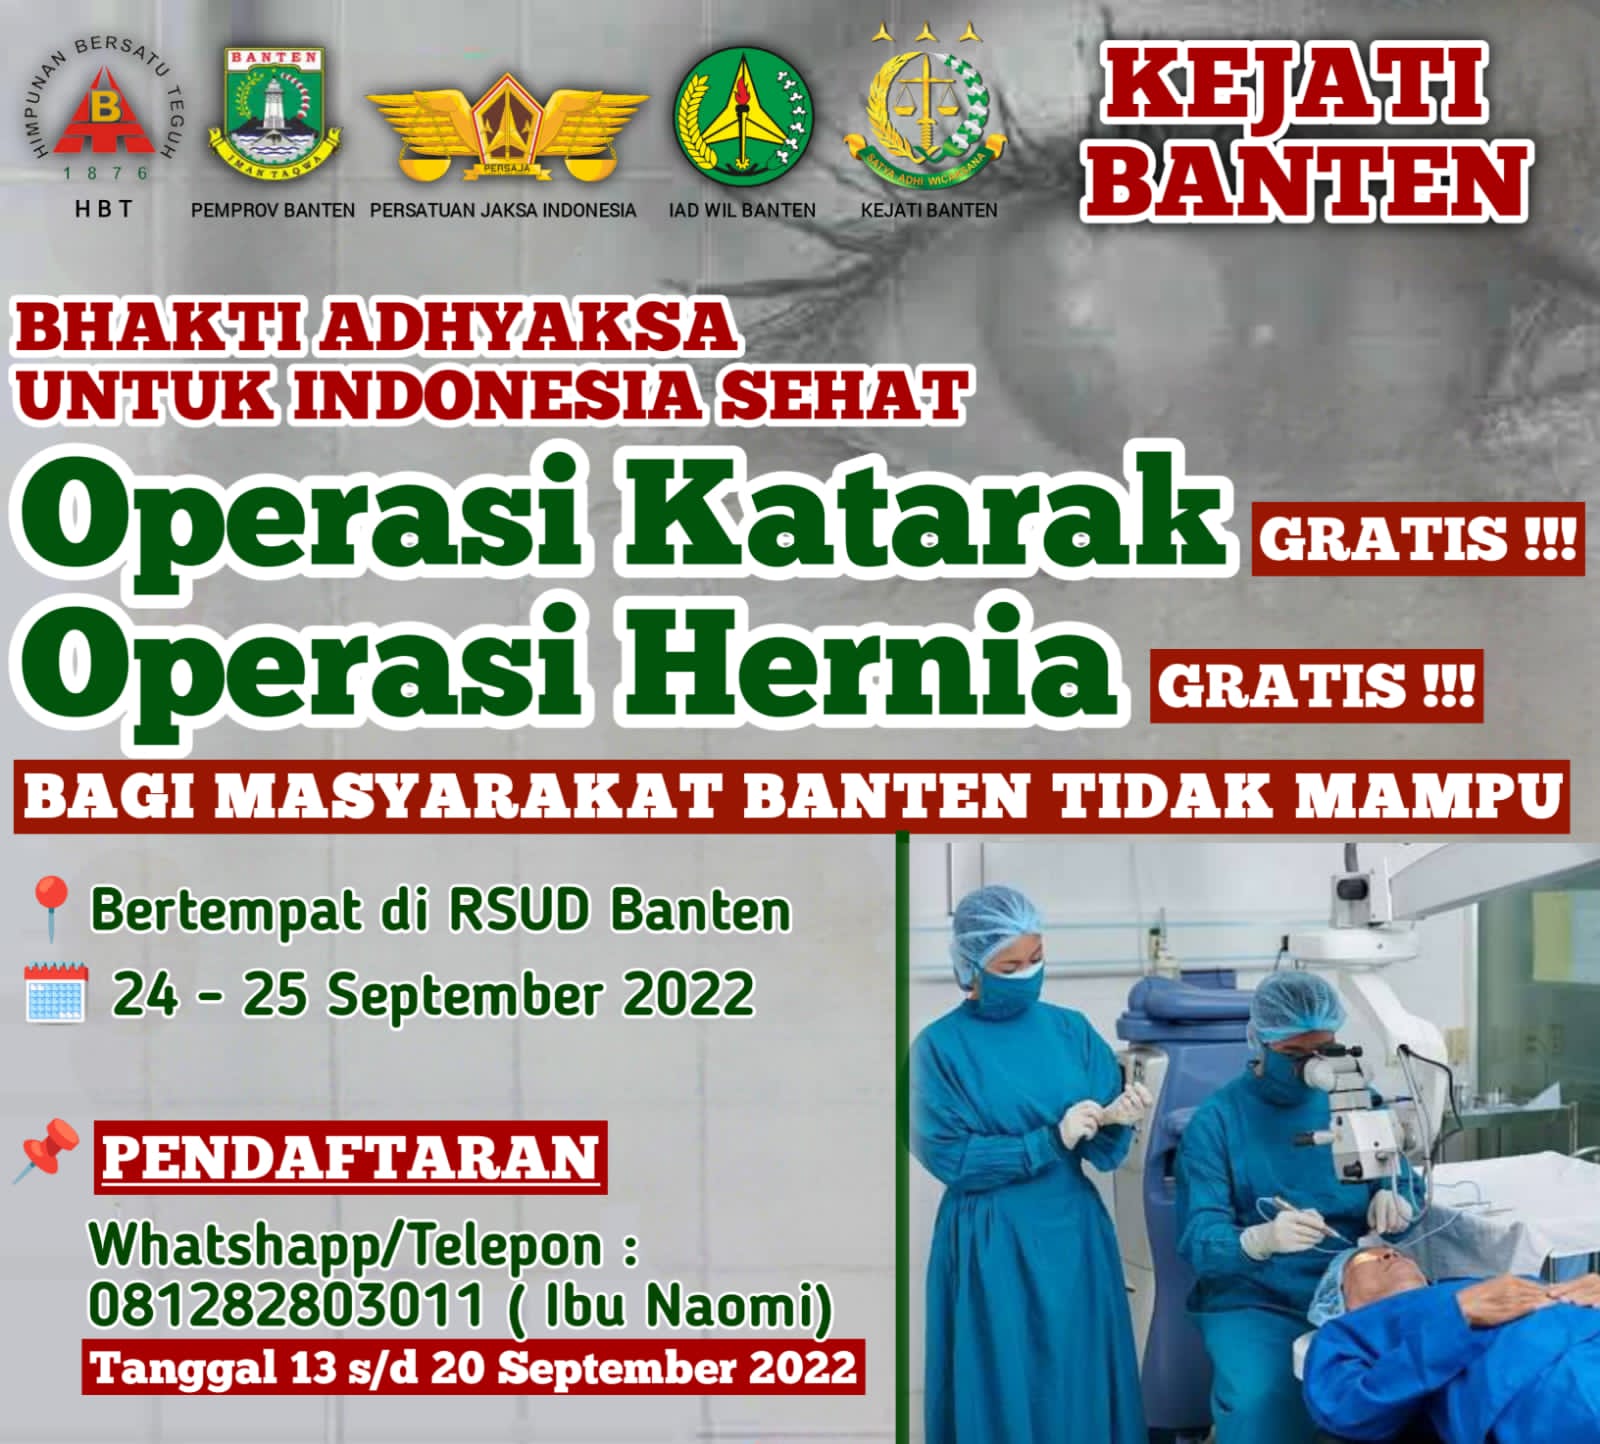 Kejaksaan Tinggi (Kejati) bersama Dinas Kesehatan (Dinkes) Provinsi Banten menggelar operasi katarak dan hernia gratis. Program ini dalam rangka Bhakti Adhyaksa untuk Indonesia Sehat.